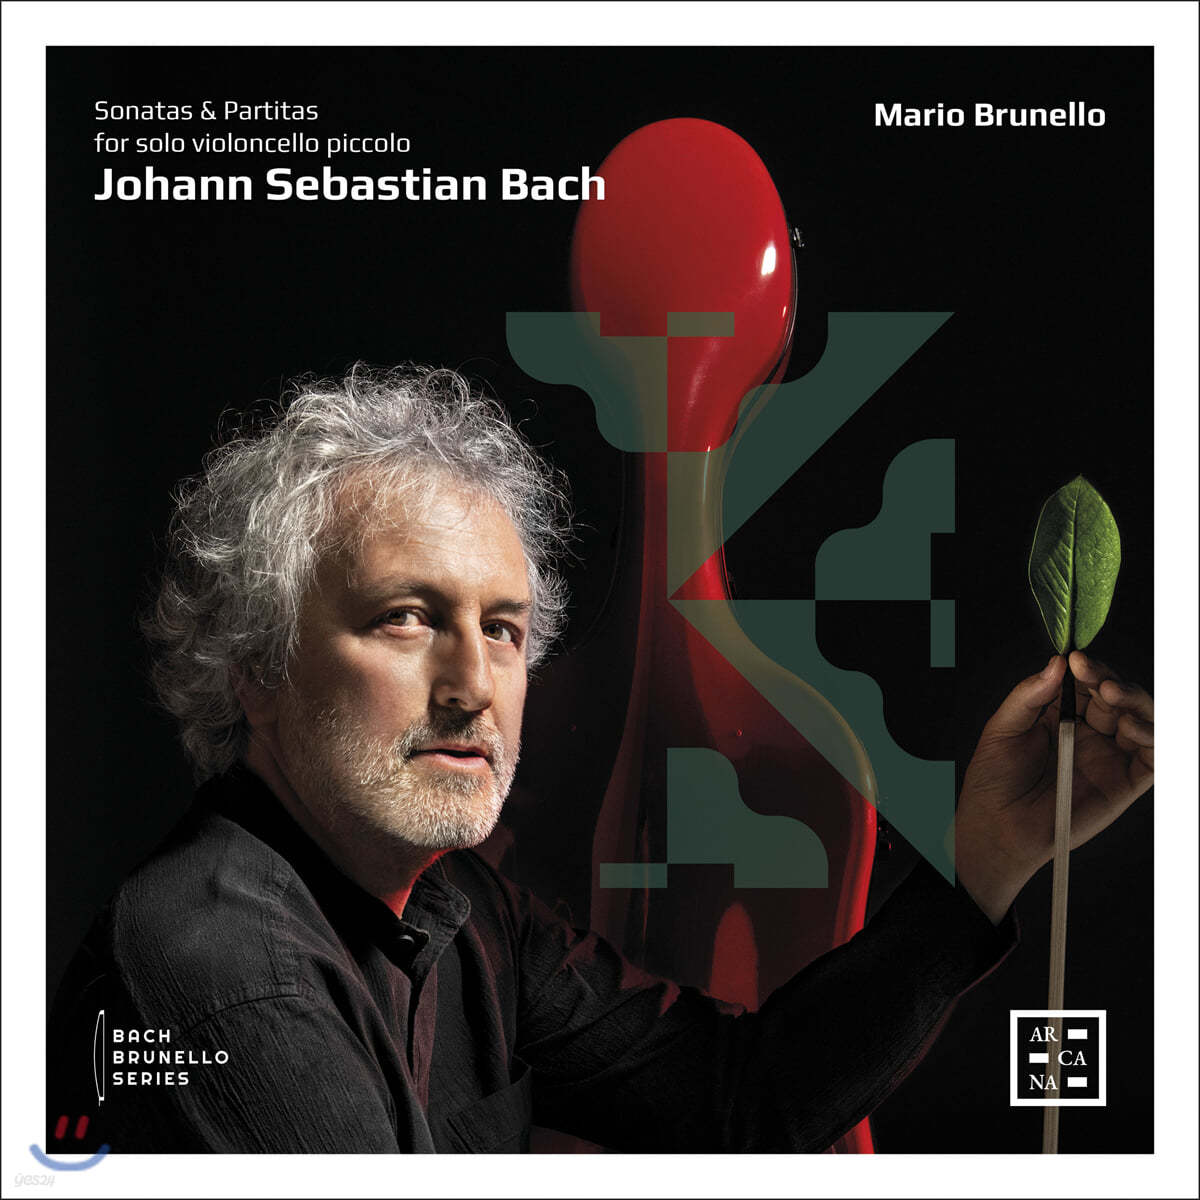 Mario Brunello 바흐: 첼로로 연주하는 무반주 바이올린 소나타와 파르티타 (Bach: Sonatas for solo violoncello piccolo) 